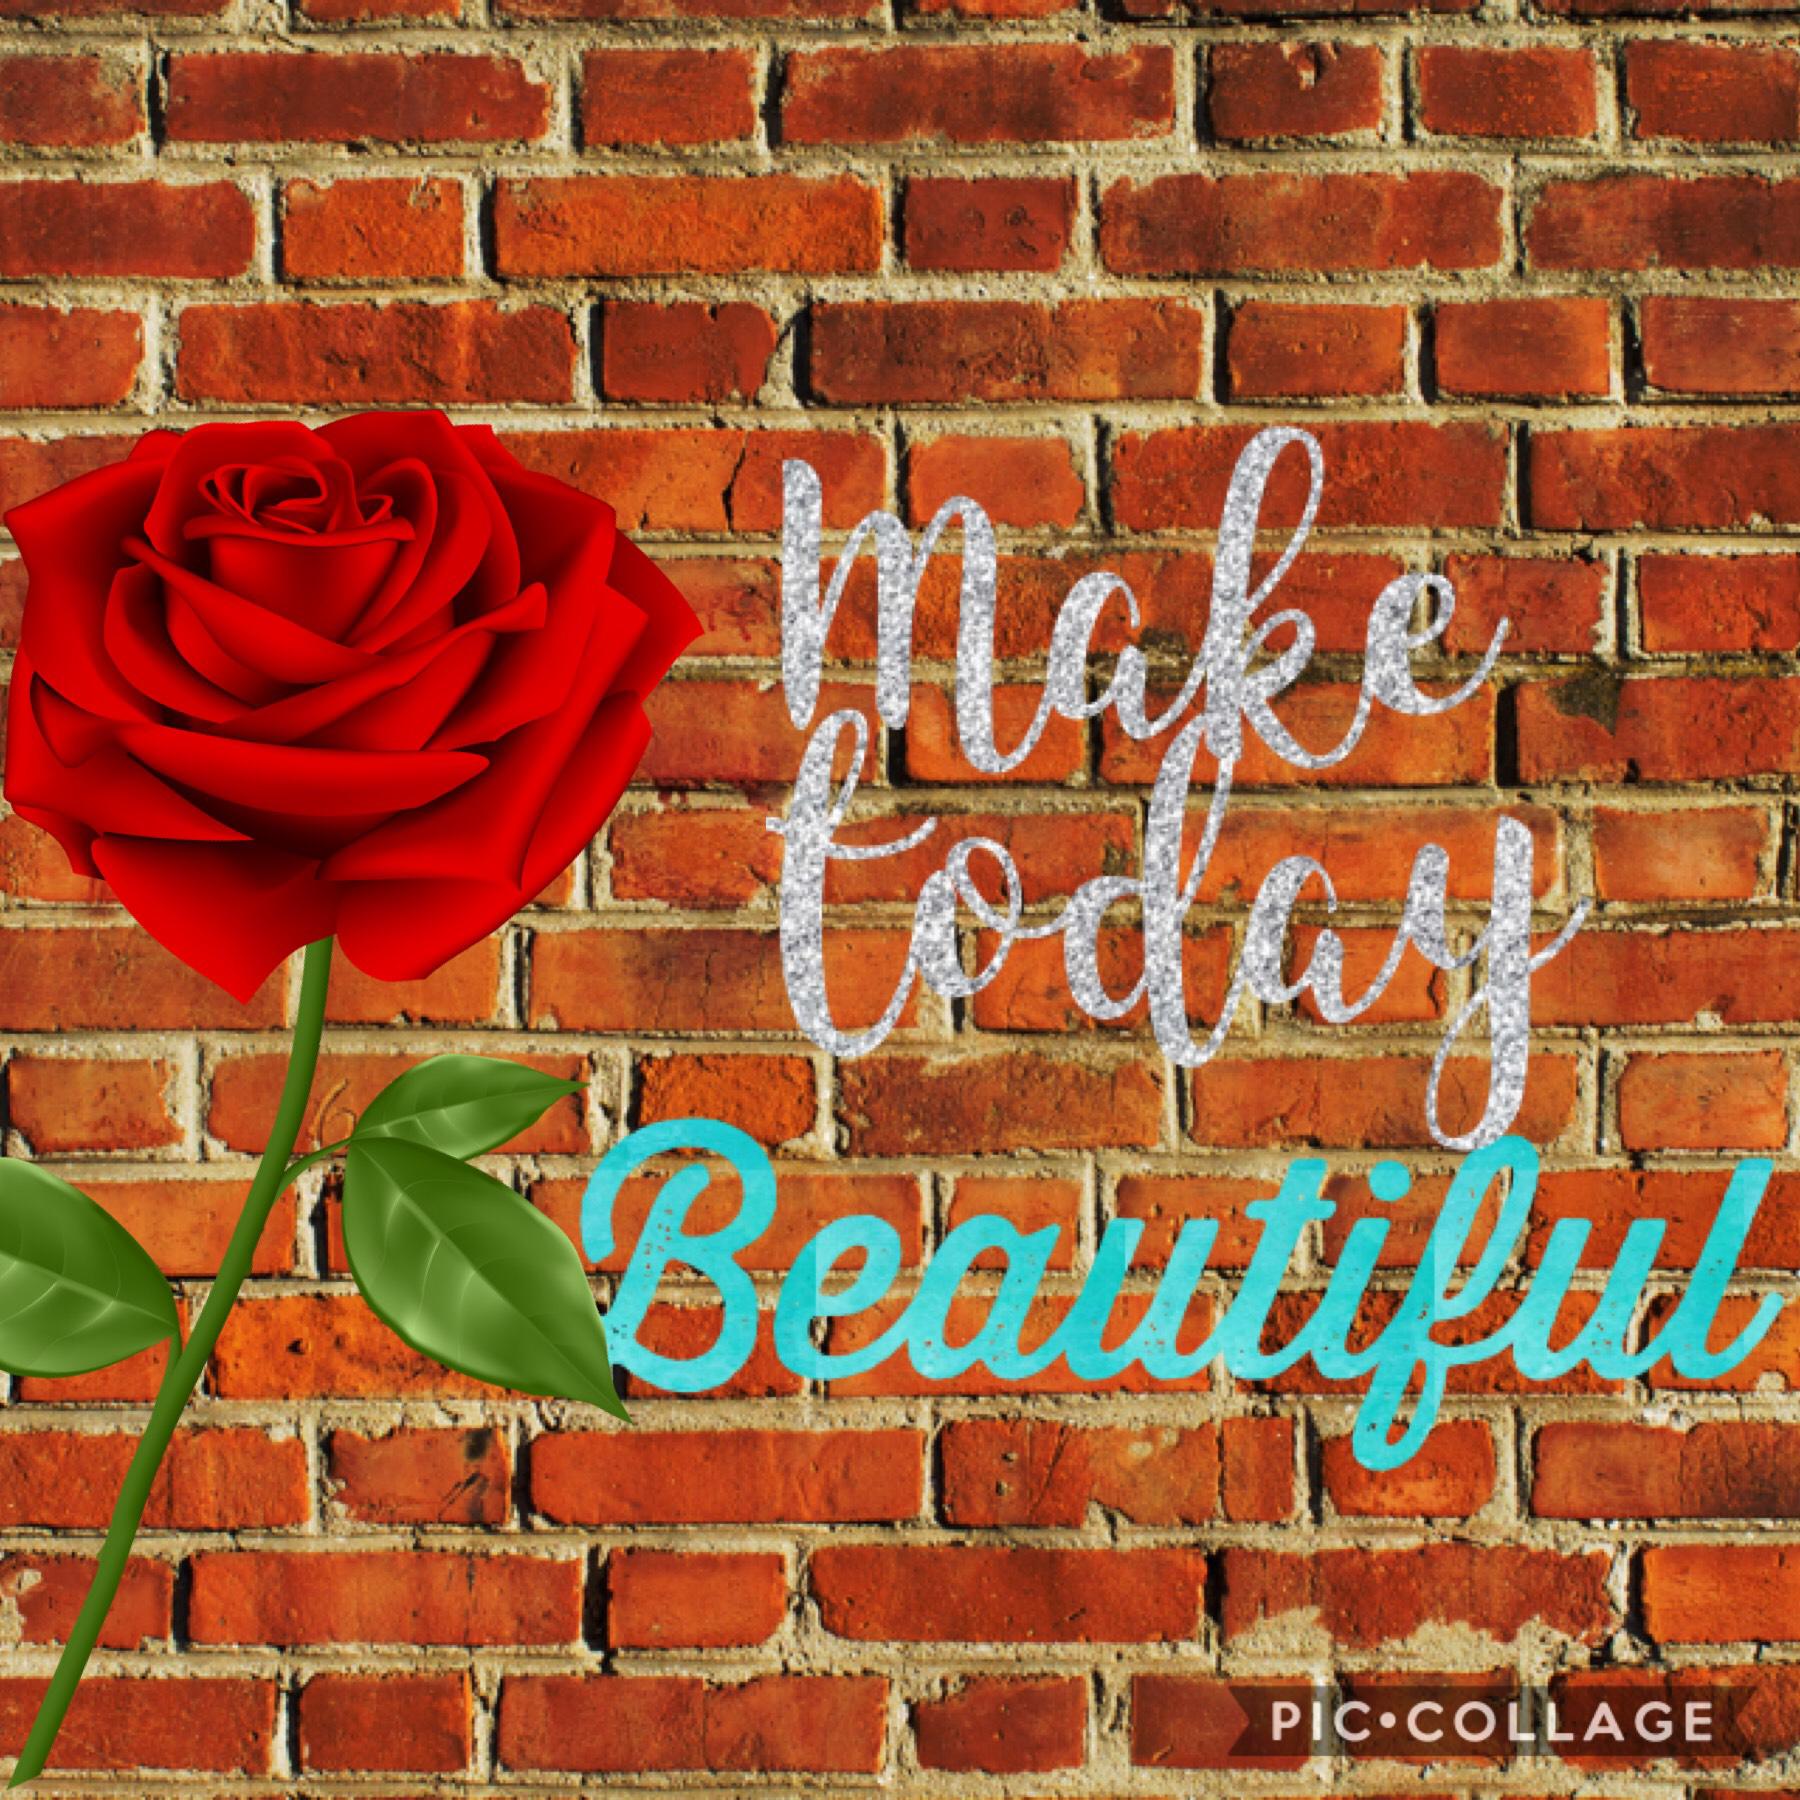 Make today beautiful!